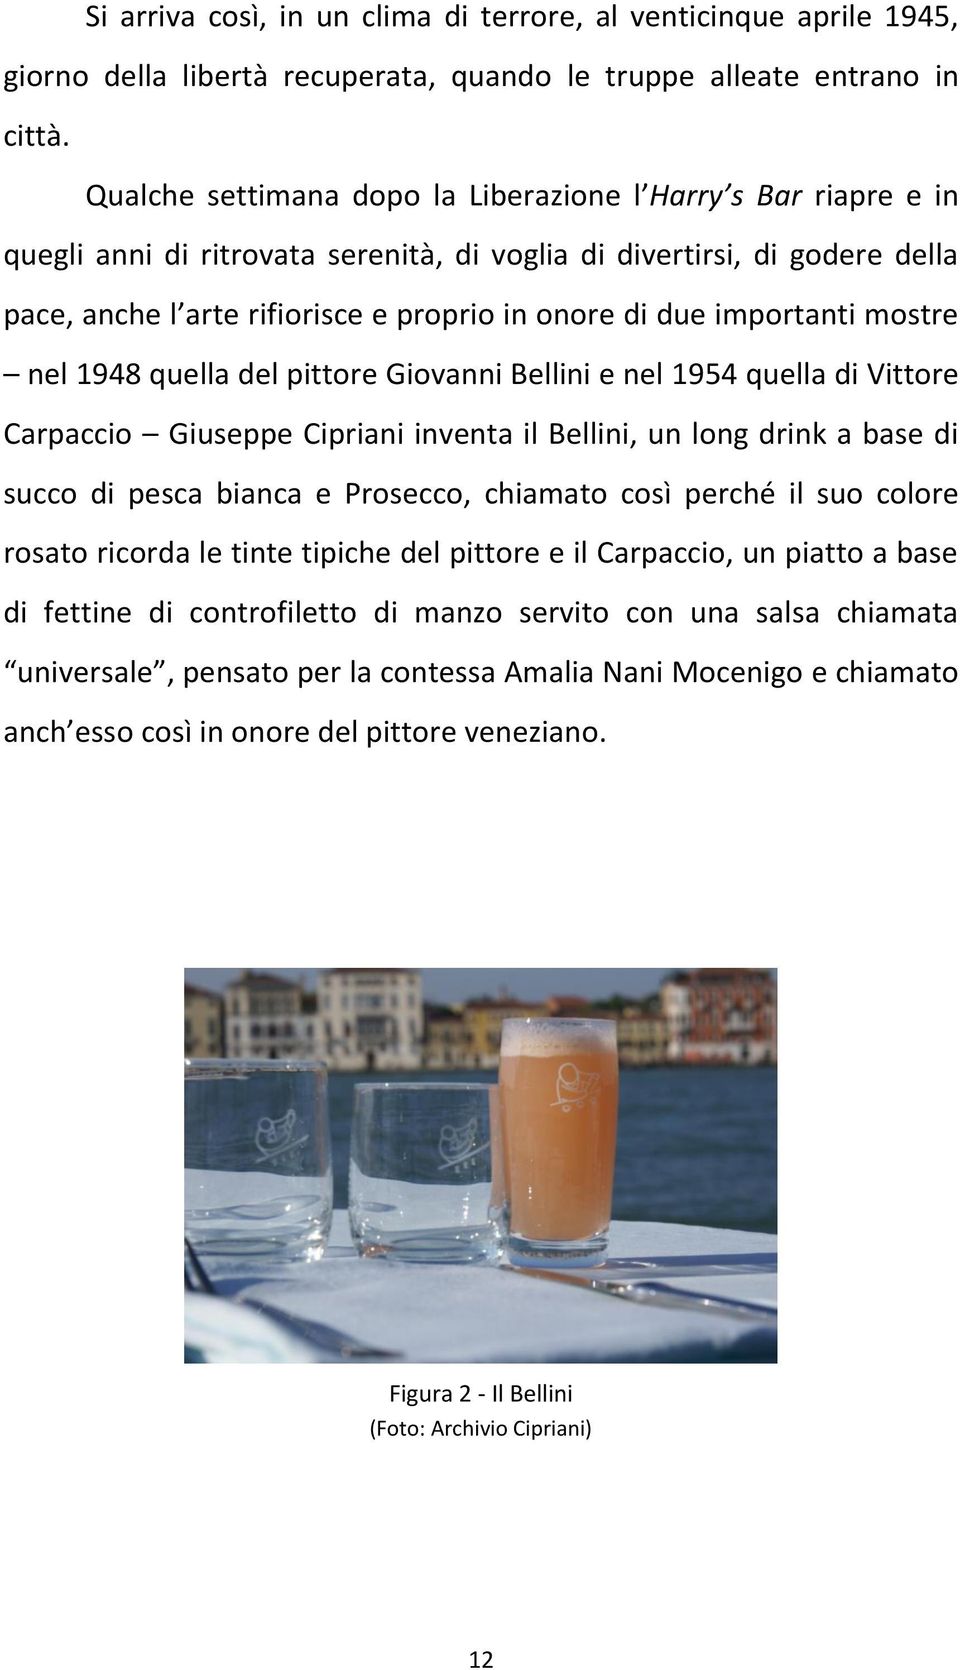 importanti mostre nel 1948 quella del pittore Giovanni Bellini e nel 1954 quella di Vittore Carpaccio Giuseppe Cipriani inventa il Bellini, un long drink a base di succo di pesca bianca e Prosecco,